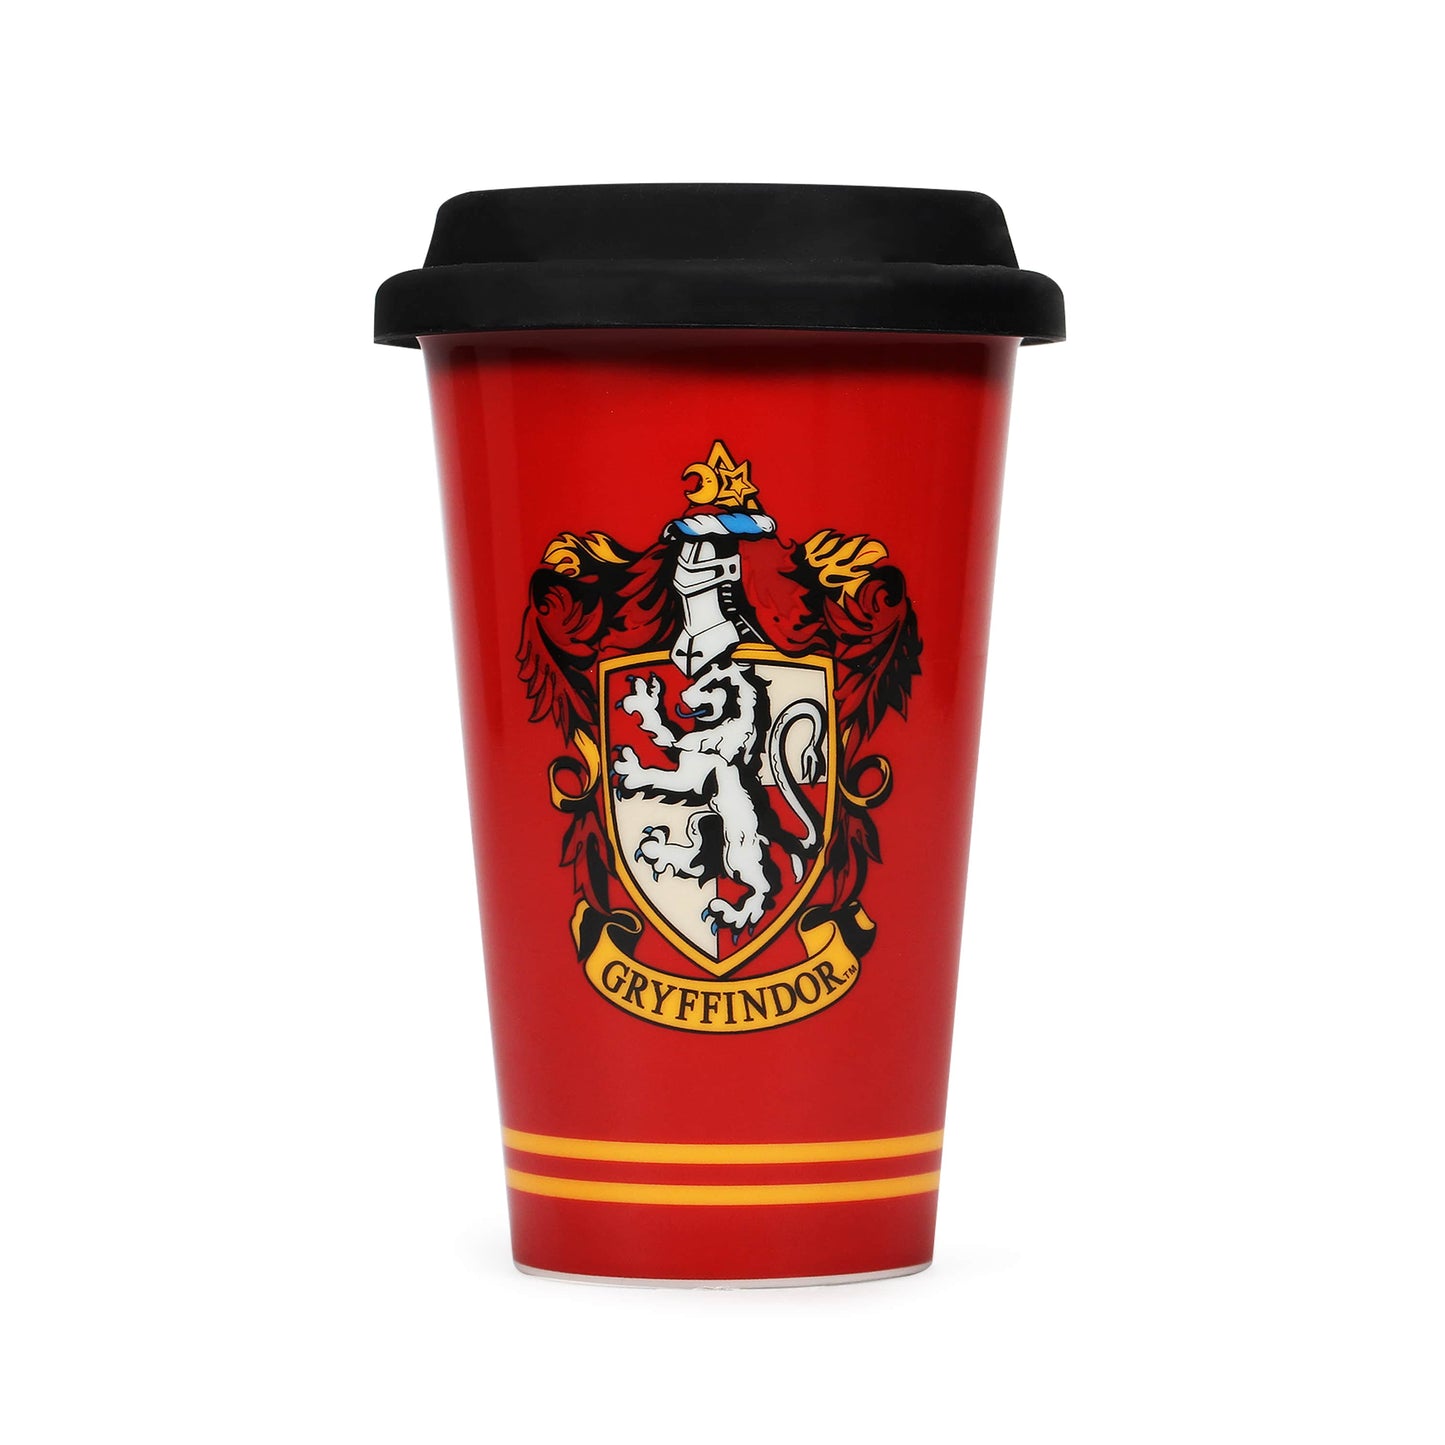 Gryffindor Ceramic Travel Mug - Harry Potter Gifts